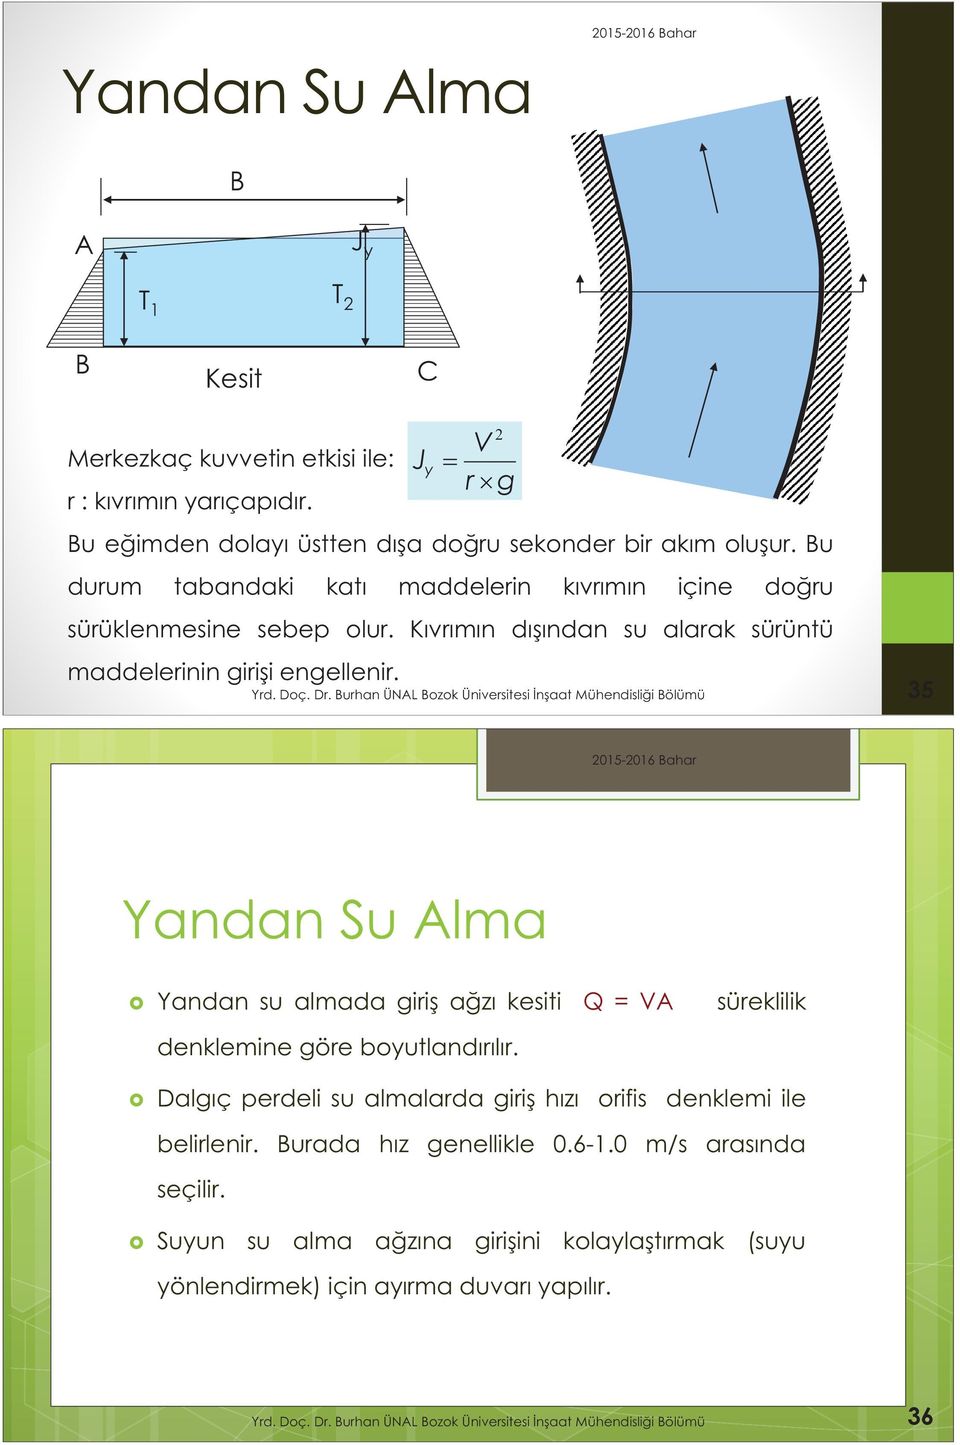 Burhan ÜNAL Bozok Üniversitesi naat Mühendislii Bölümü 35 Yandan Su Alma Yandan su almada giriş ağzı kesiti Q=VA süreklilik denklemine göre boyutlandırılır.